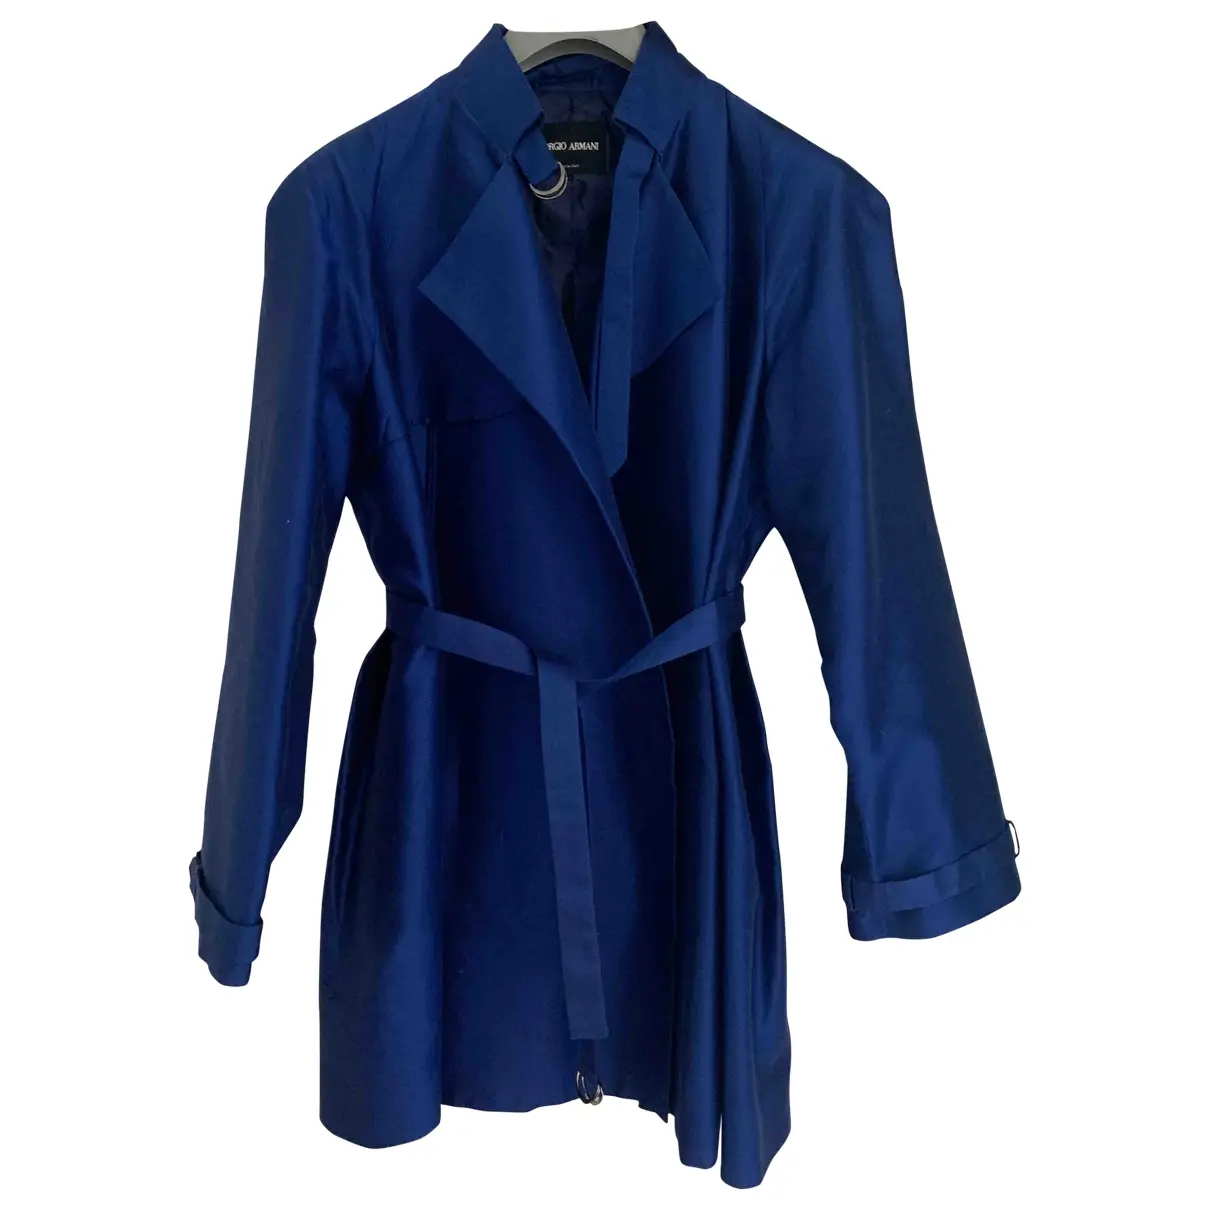 Silk trench coat Giorgio Armani